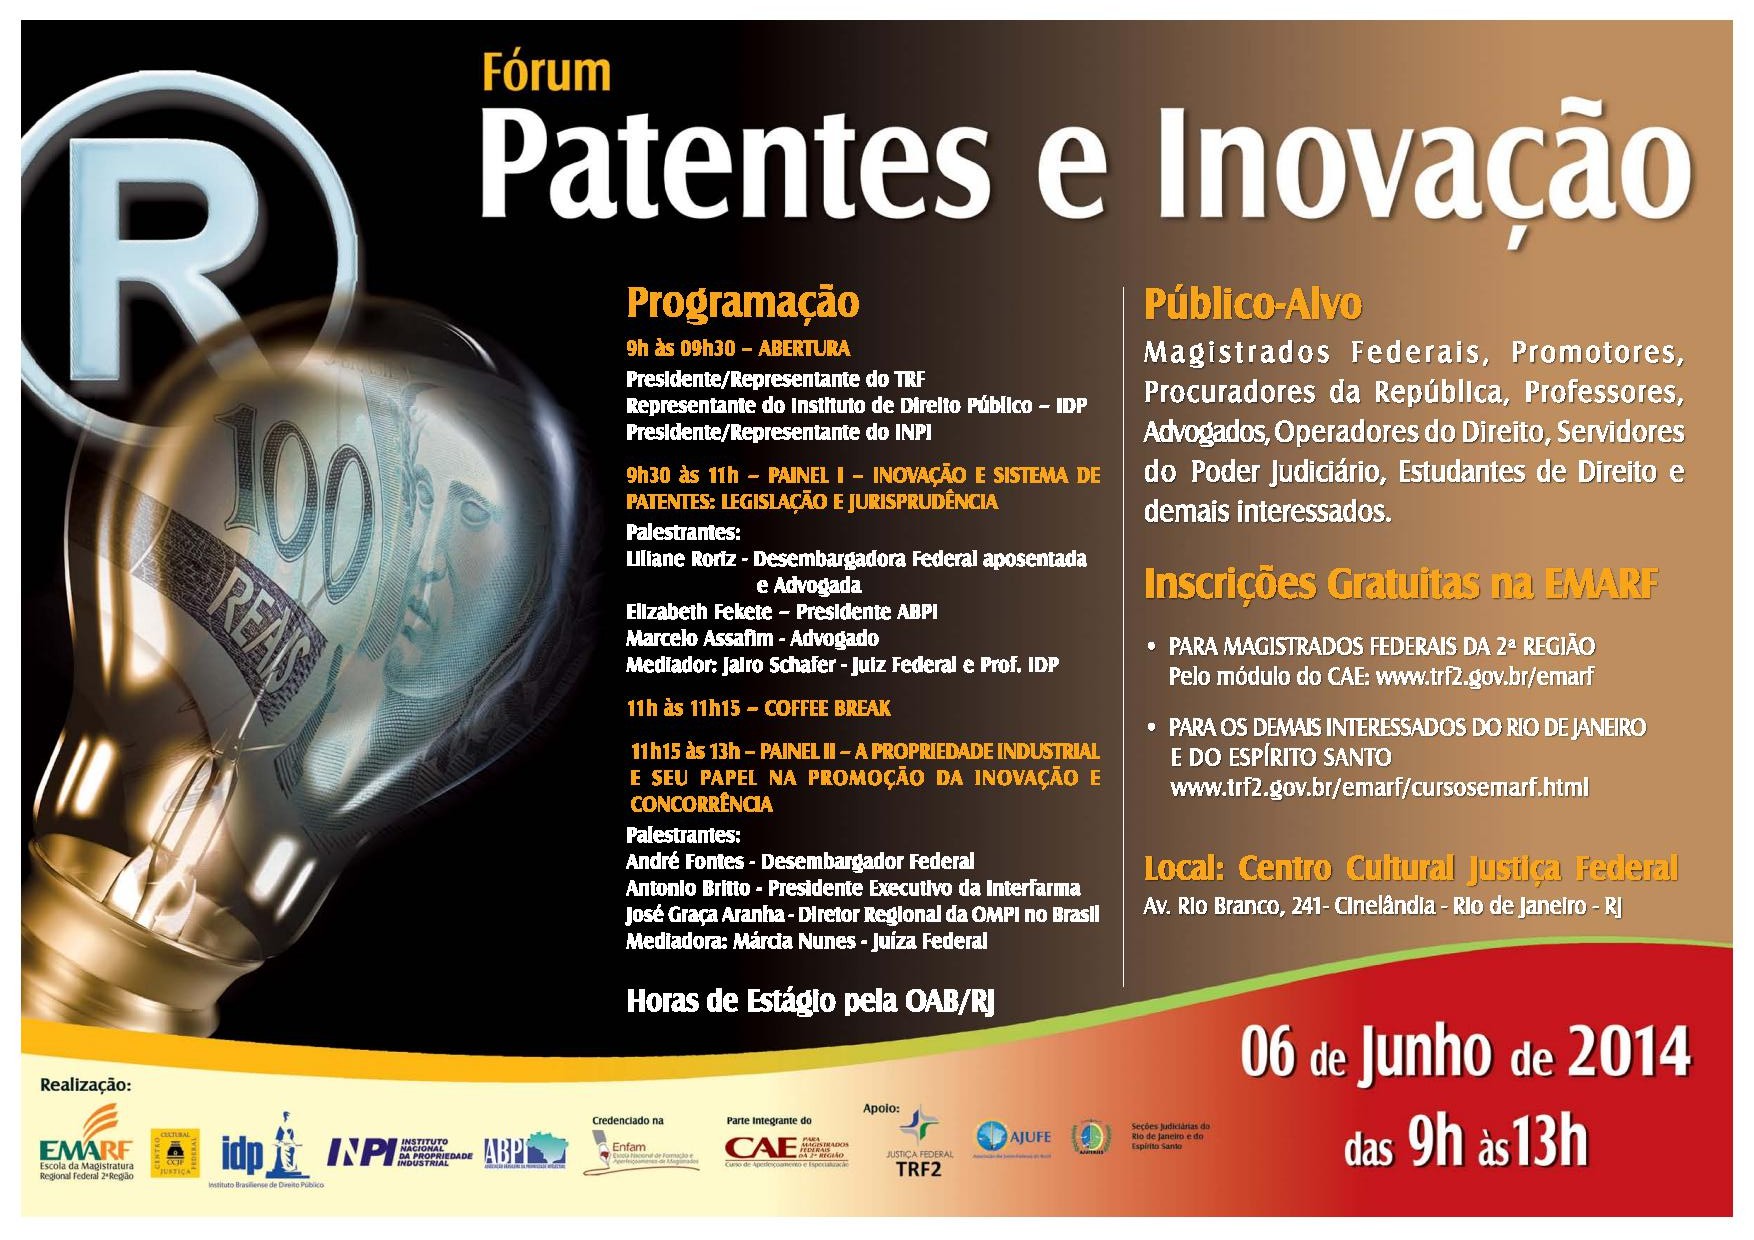 Fórum Patentes e Inovação tem apoio do IDP